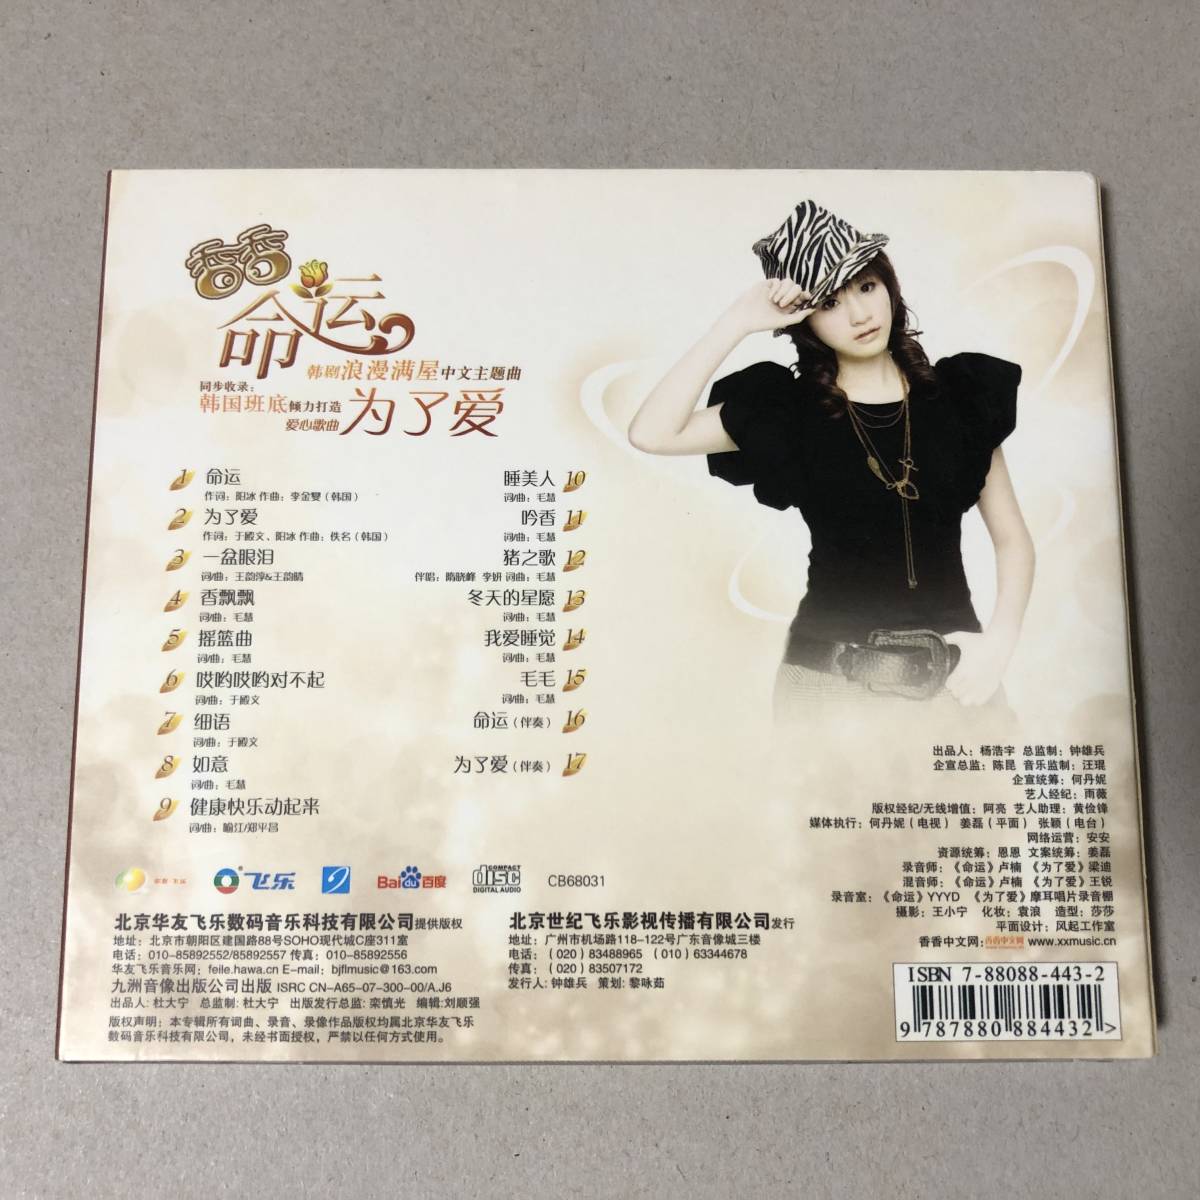 香香 シャン・シャン CD ② 命運 新歌・精選 Xiang Xiang 中国 香港 台湾 アジア アイドル ポップス C-POP_画像5